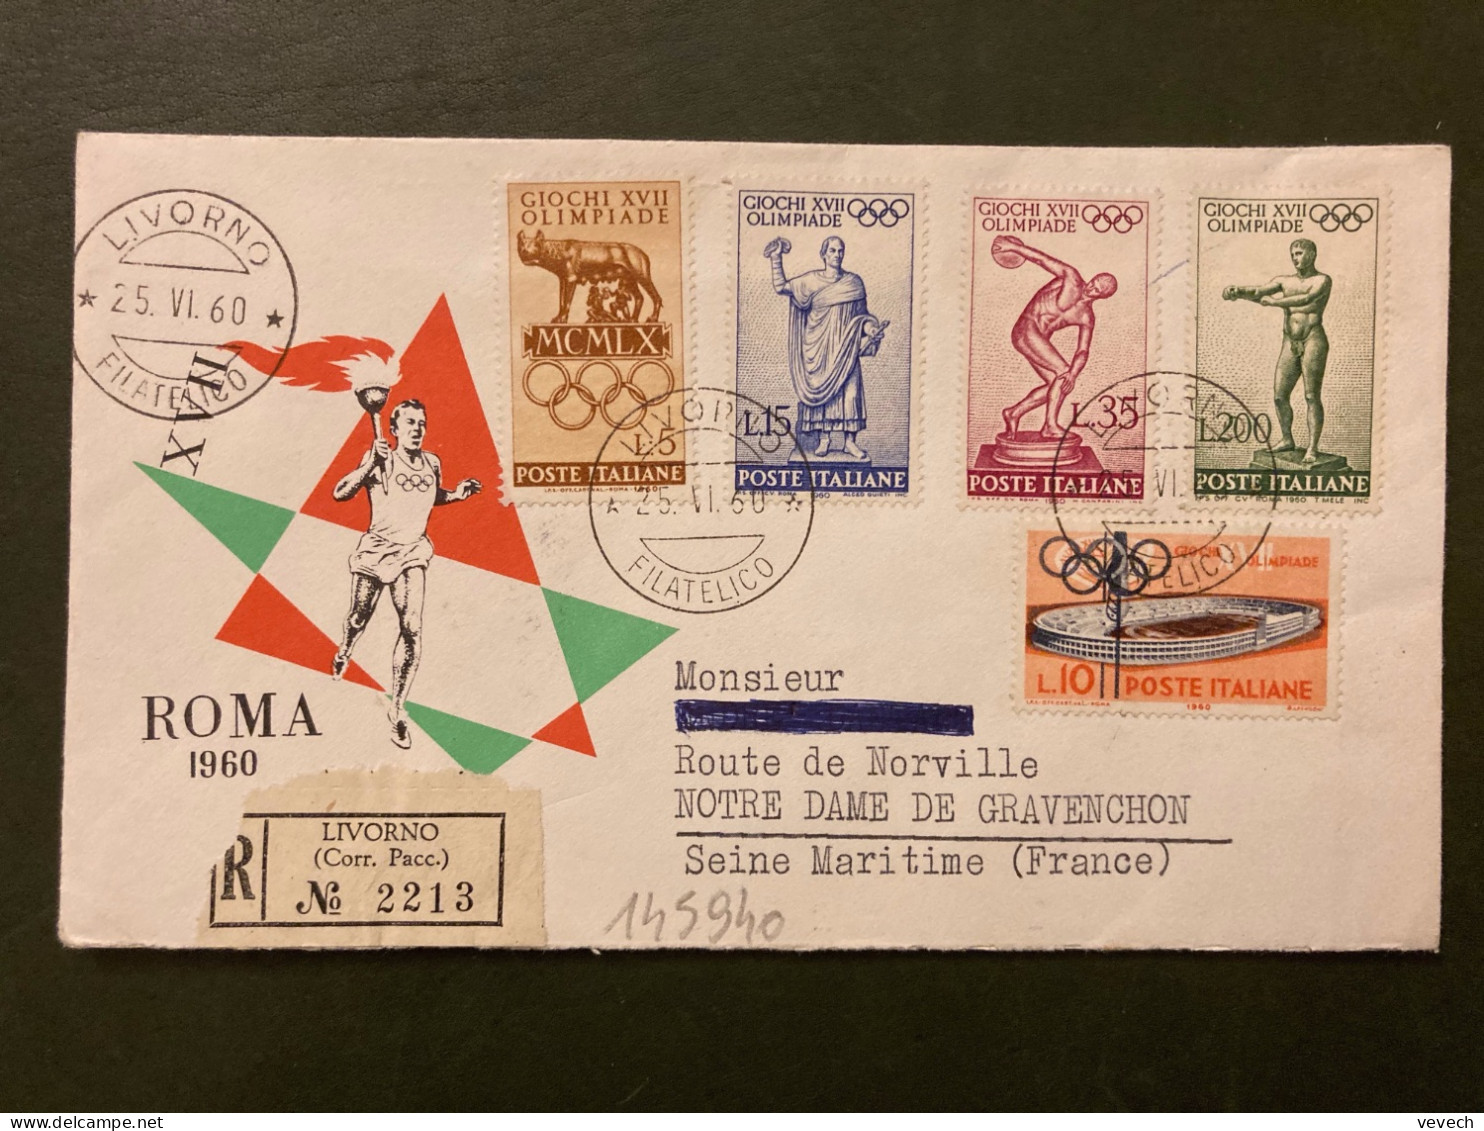 LR ROMA JO XVII OLIMPIADE TP L5 + L15 + L35 + L200 + L10 OBL.25 VI 60 LIVORNO - Verano 1960: Roma